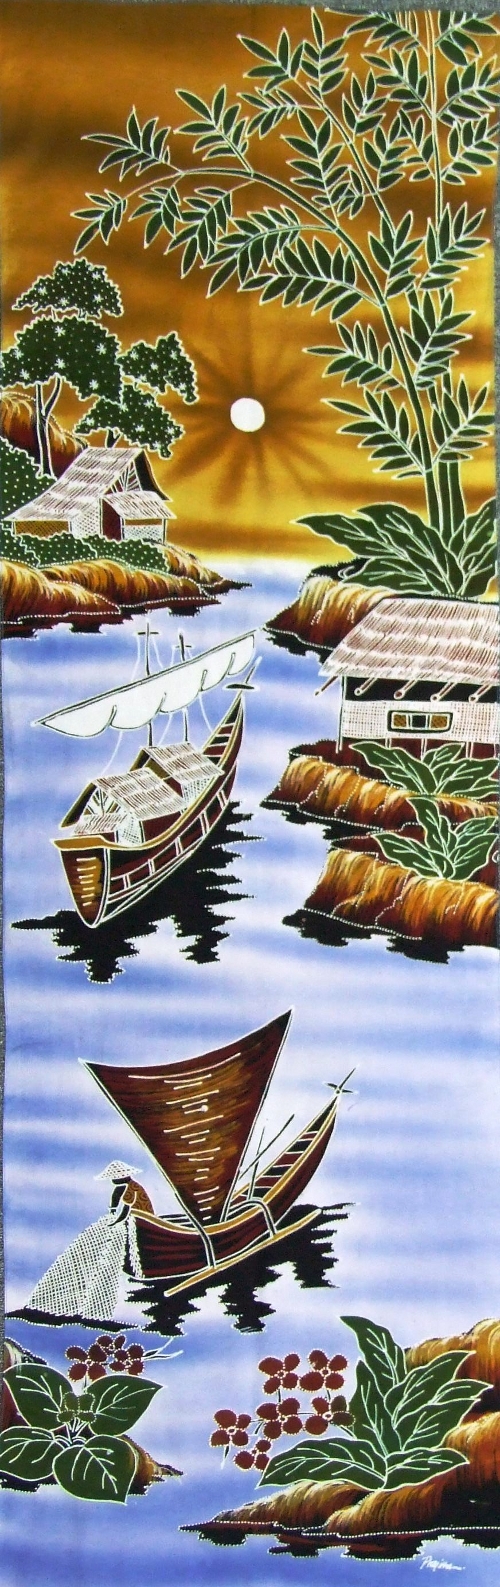 Landscape - 3 boats - brown (45x150cm)